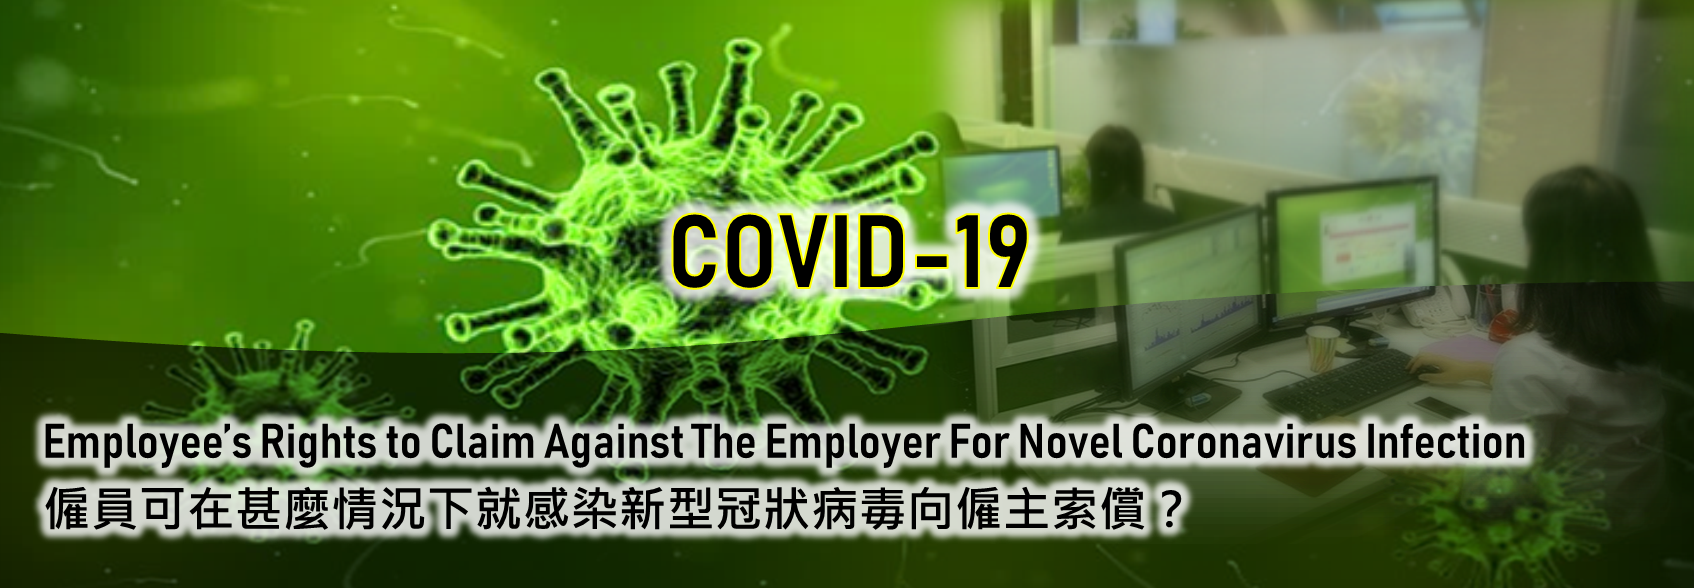 僱員可在甚麼情況下就感染新型冠狀病毒向僱主索償？